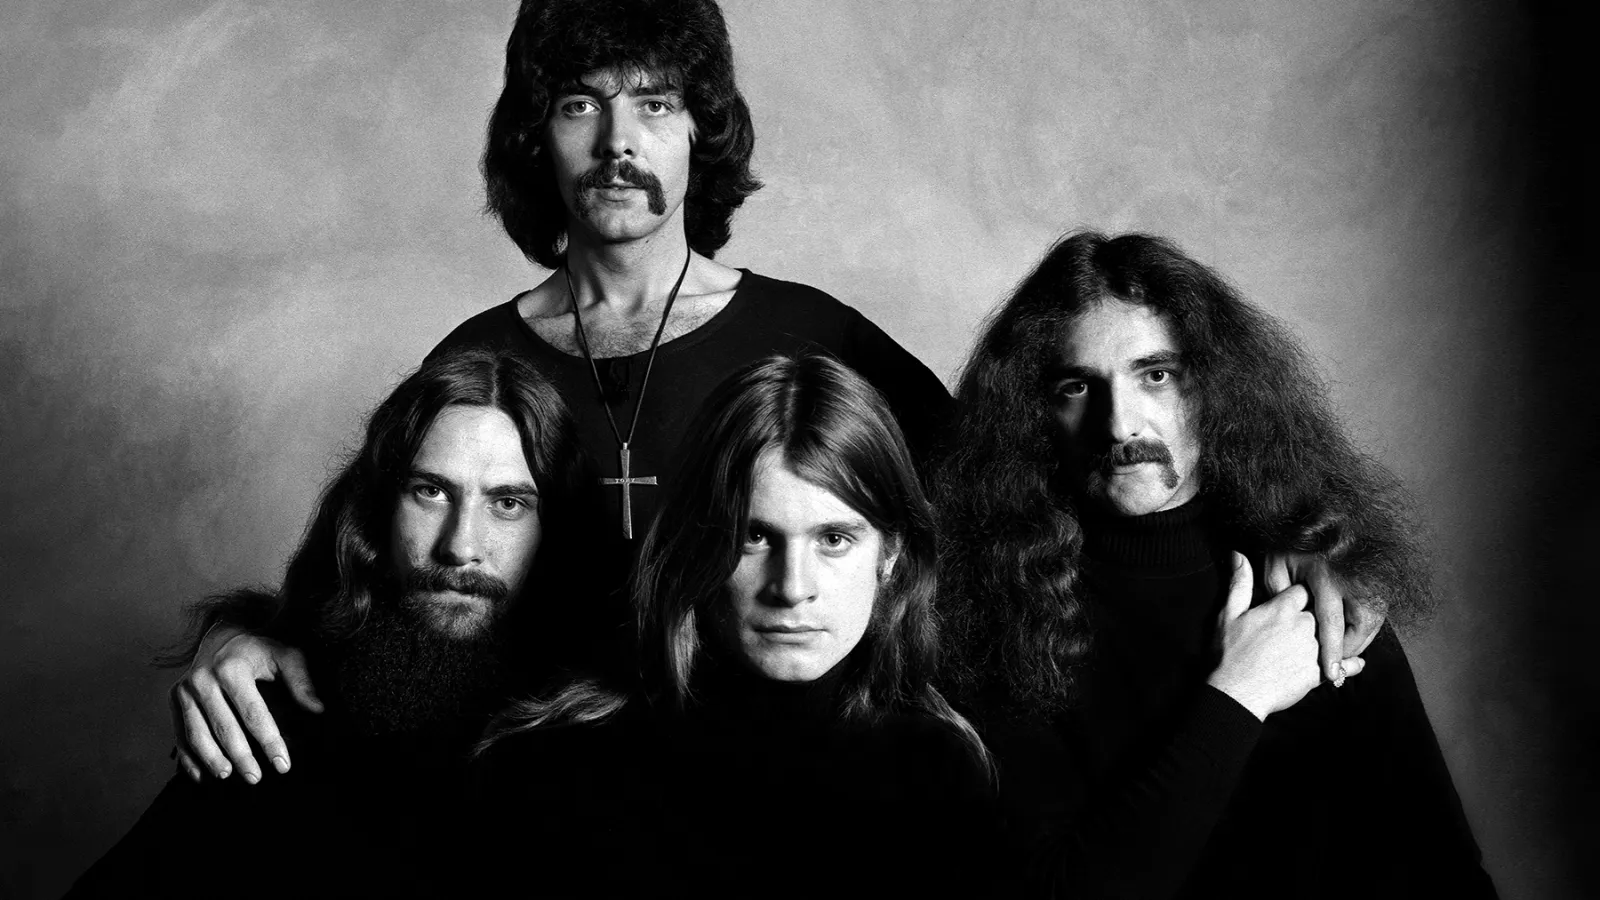 The original members of Black Sabbath